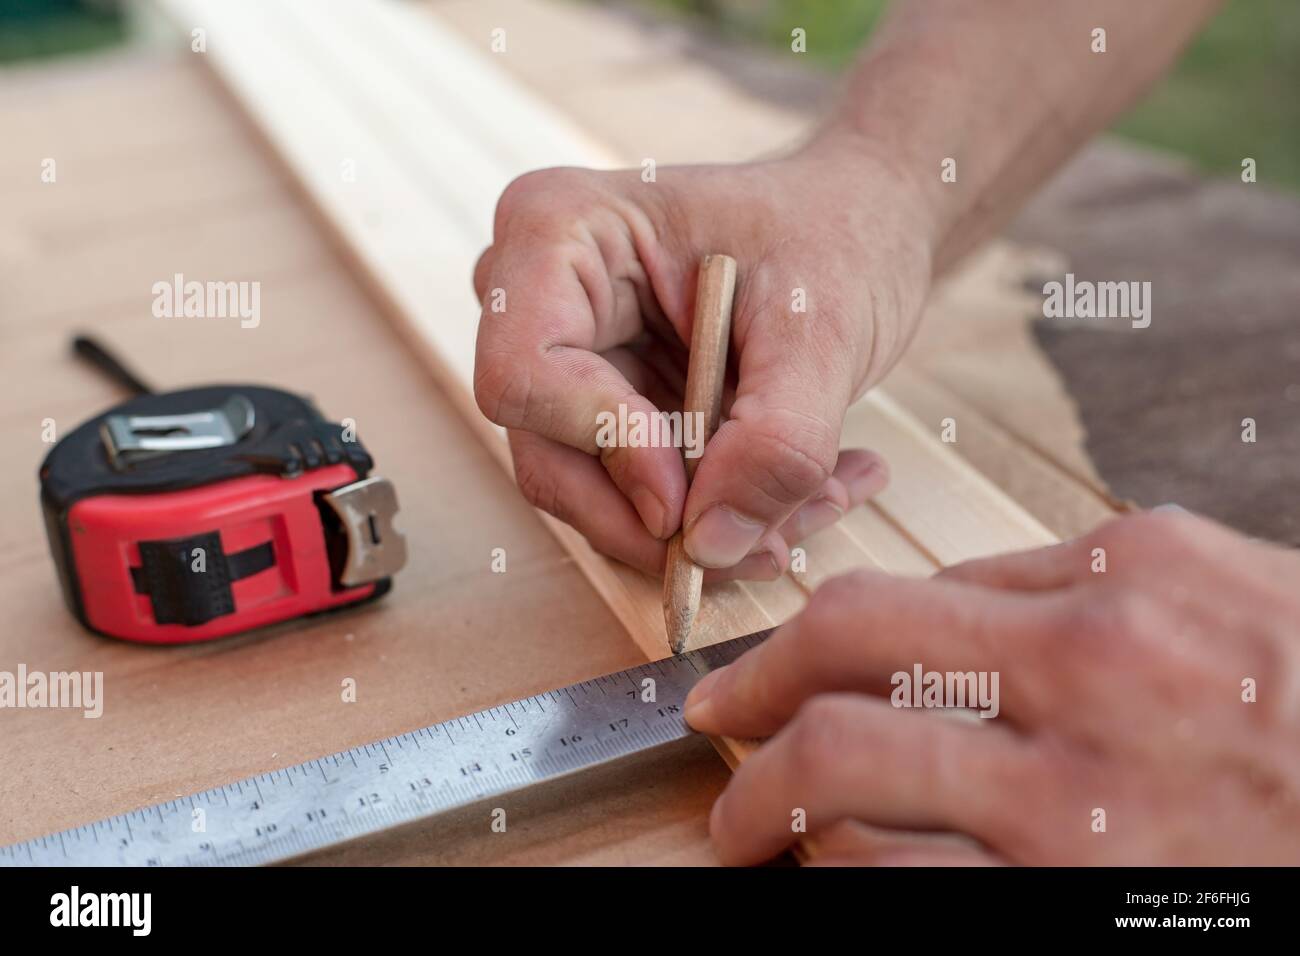 Le mani del falegname prendono le misure con un righello metallico su una tavola di legno e contrassegnano la lunghezza richiesta con una matita. Foto Stock